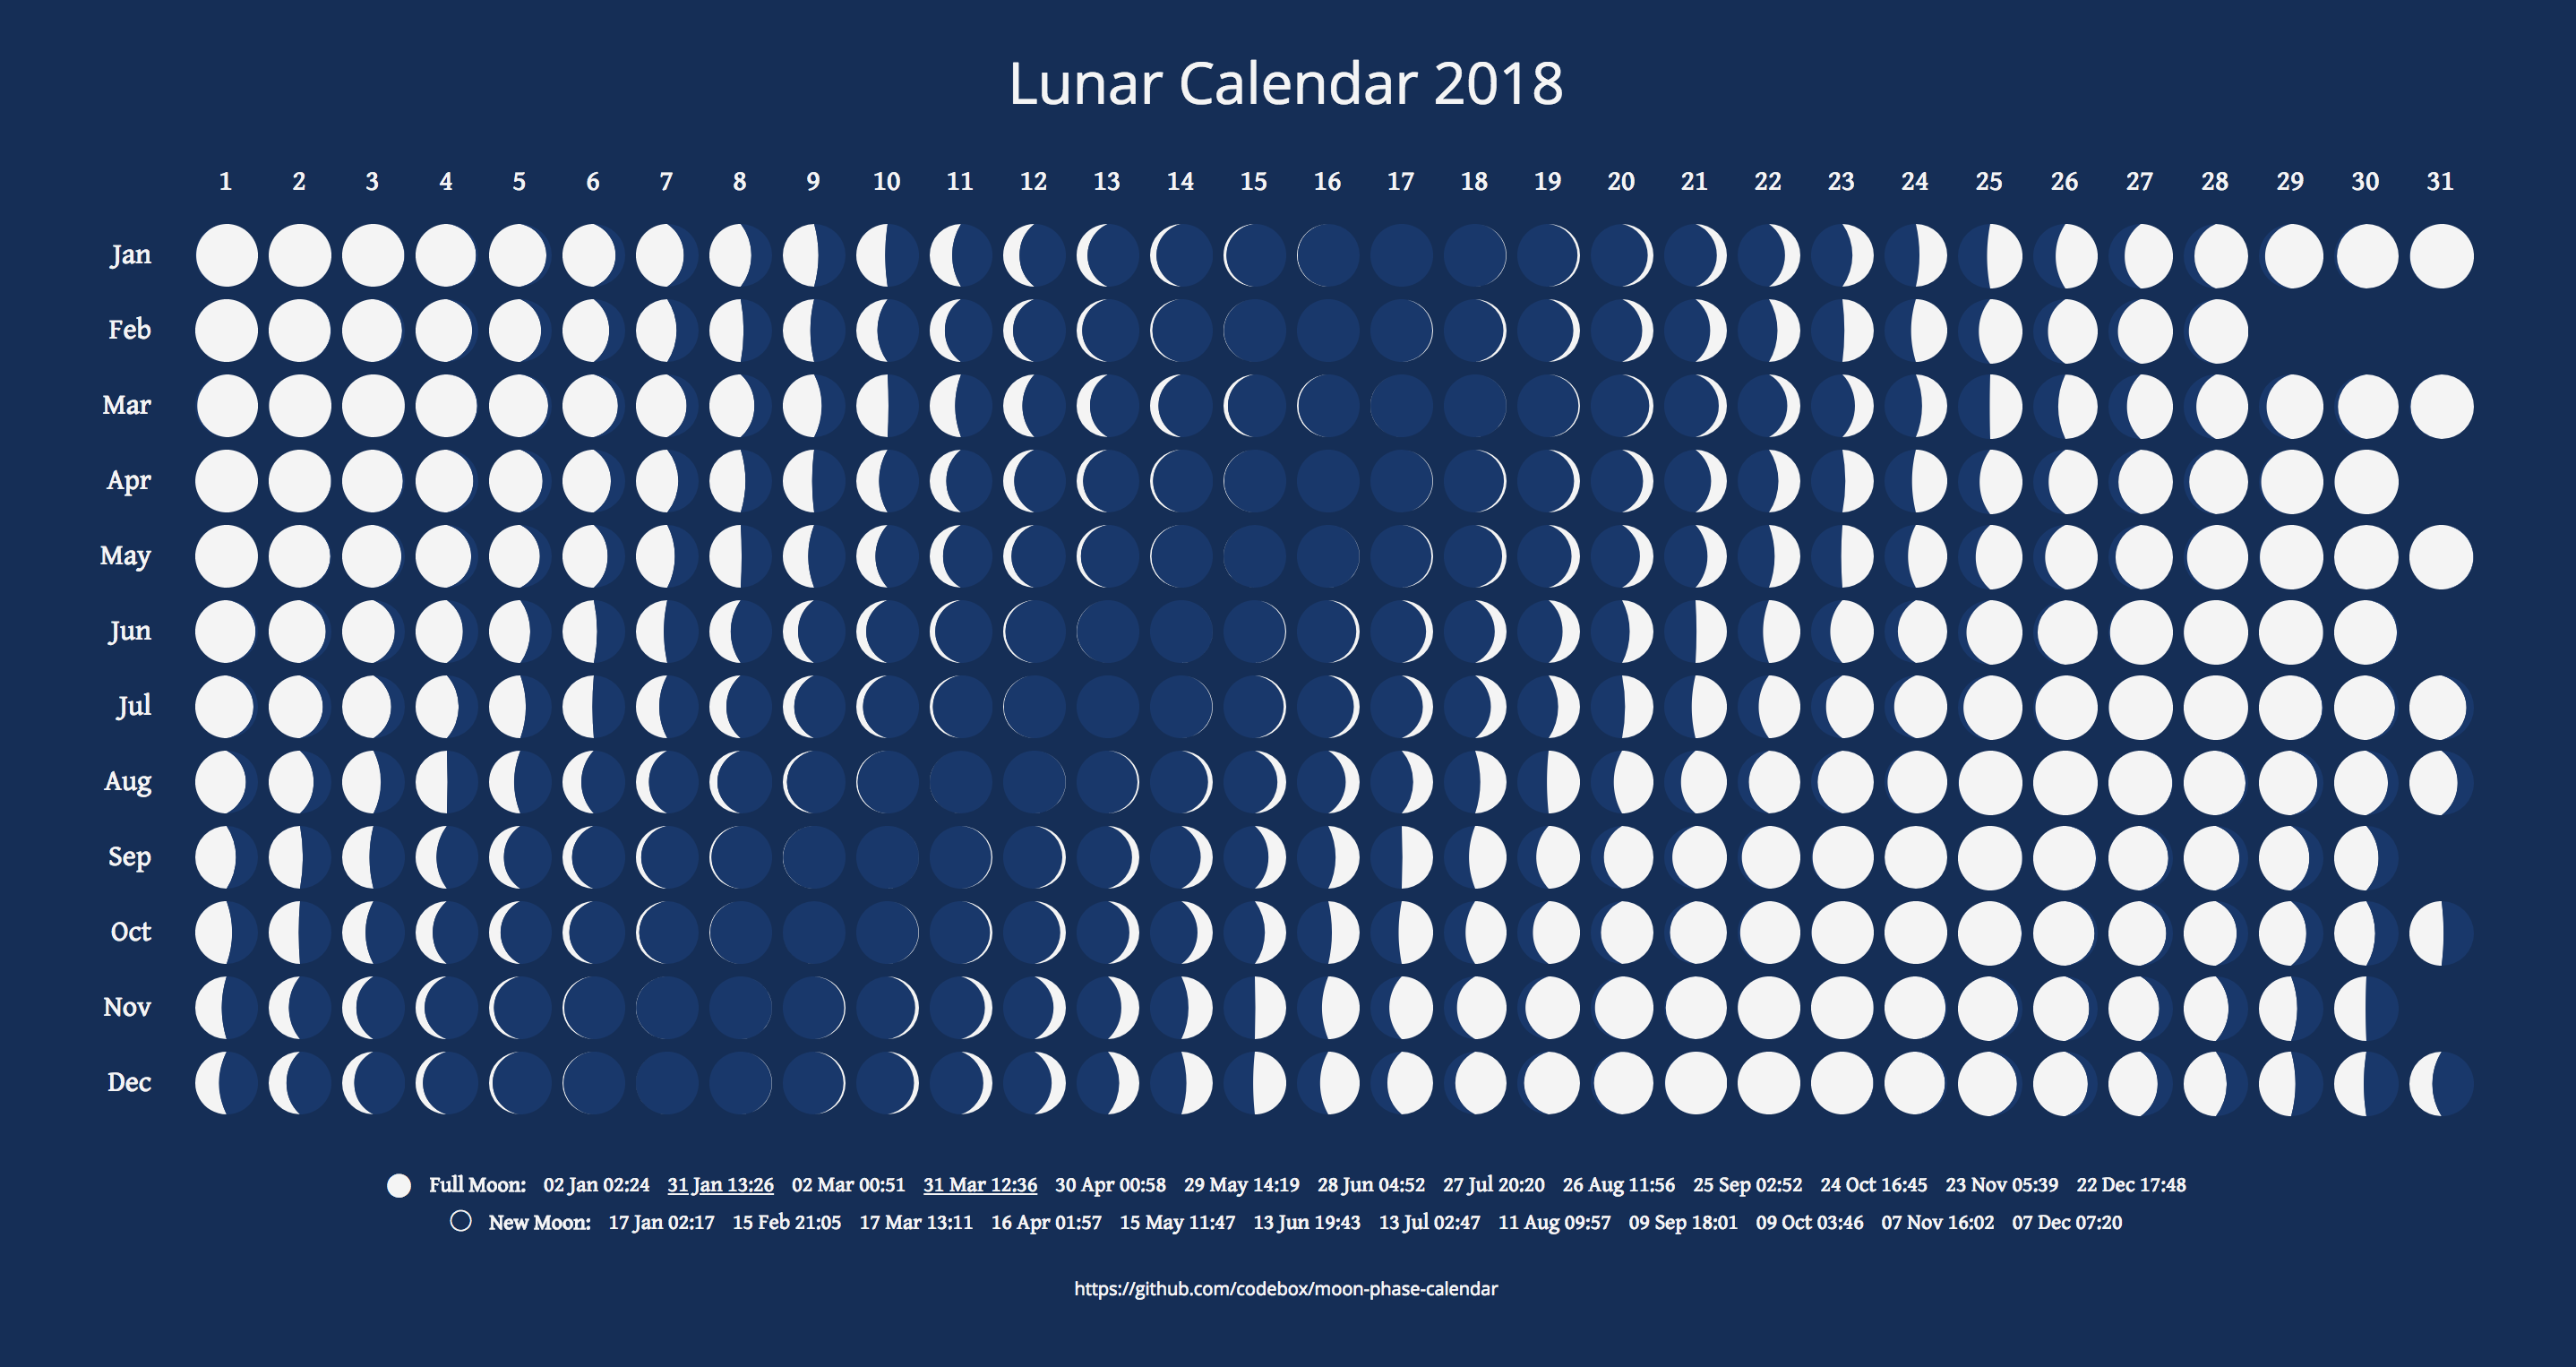 Lunar Calendar for 2018